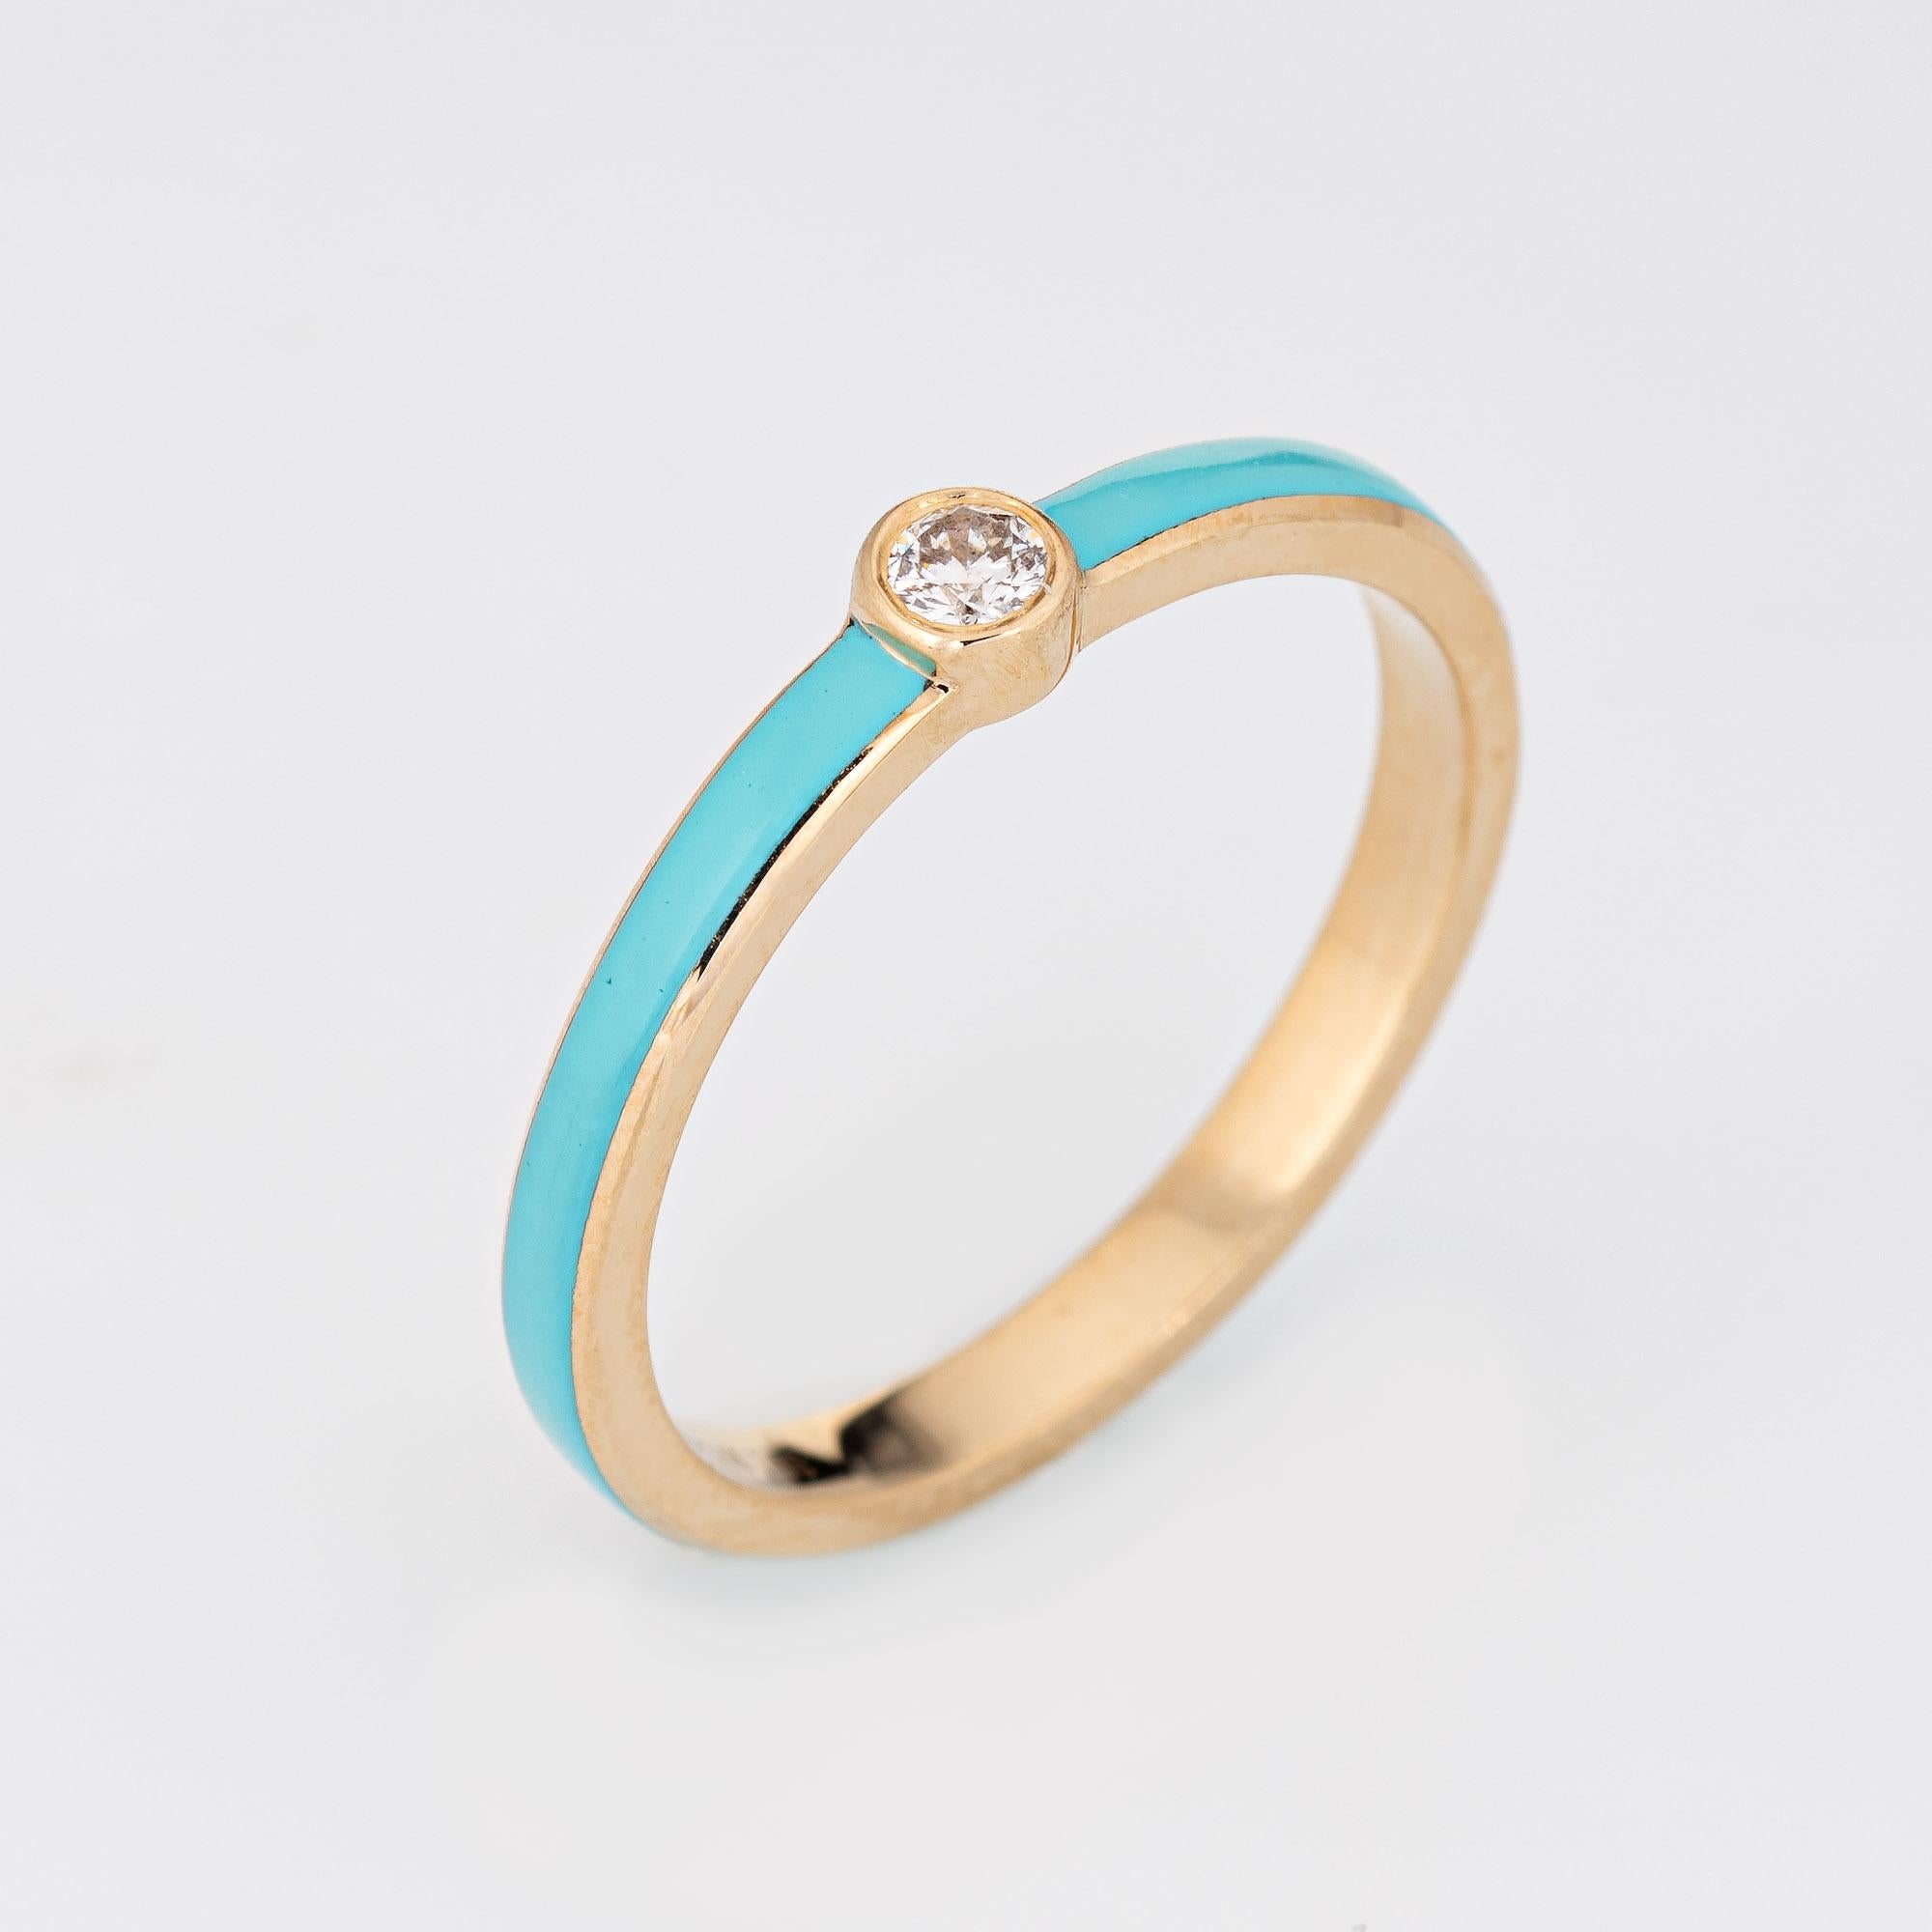 Élégant bracelet superposé en turquoise et diamants, fabriqué en or jaune 14 carats. 

1 diamant rond de taille brillant d'un total estimé à 0,03 carat (couleur estimée H-I et pureté SI2). 

La bande émaillée est d'une couleur turquoise saisissante